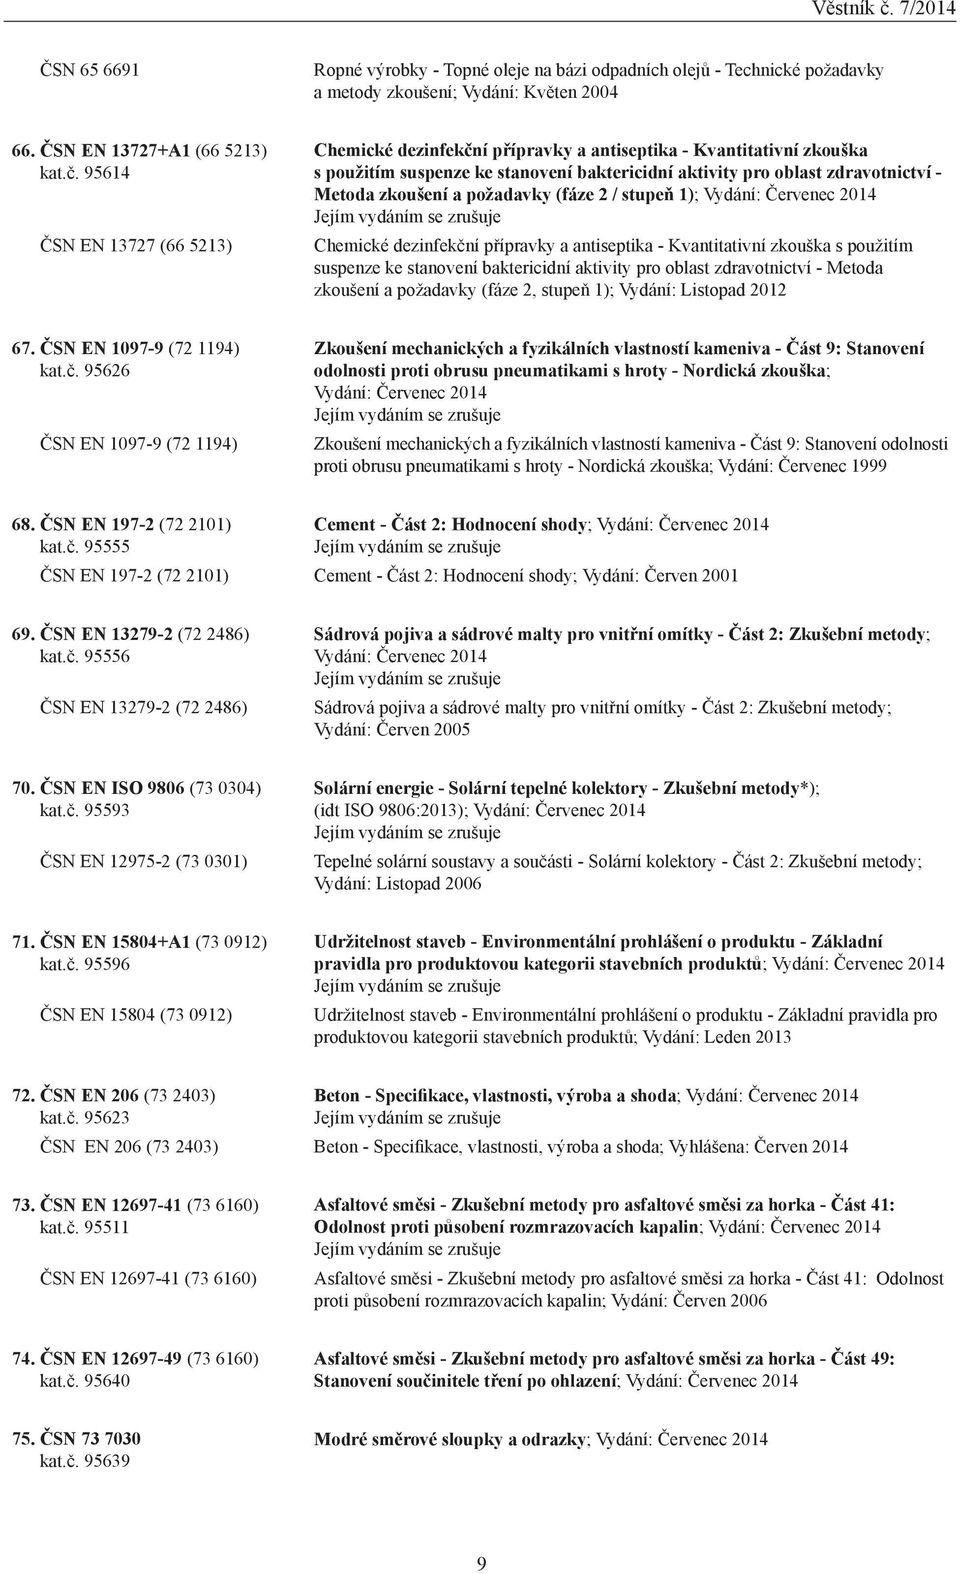 požadavky (fáze 2 / stupeň 1); Vydání: Červenec 2014 Chemické dezinfekční přípravky a antiseptika - Kvantitativní zkouška s použitím suspenze ke stanovení baktericidní aktivity pro oblast